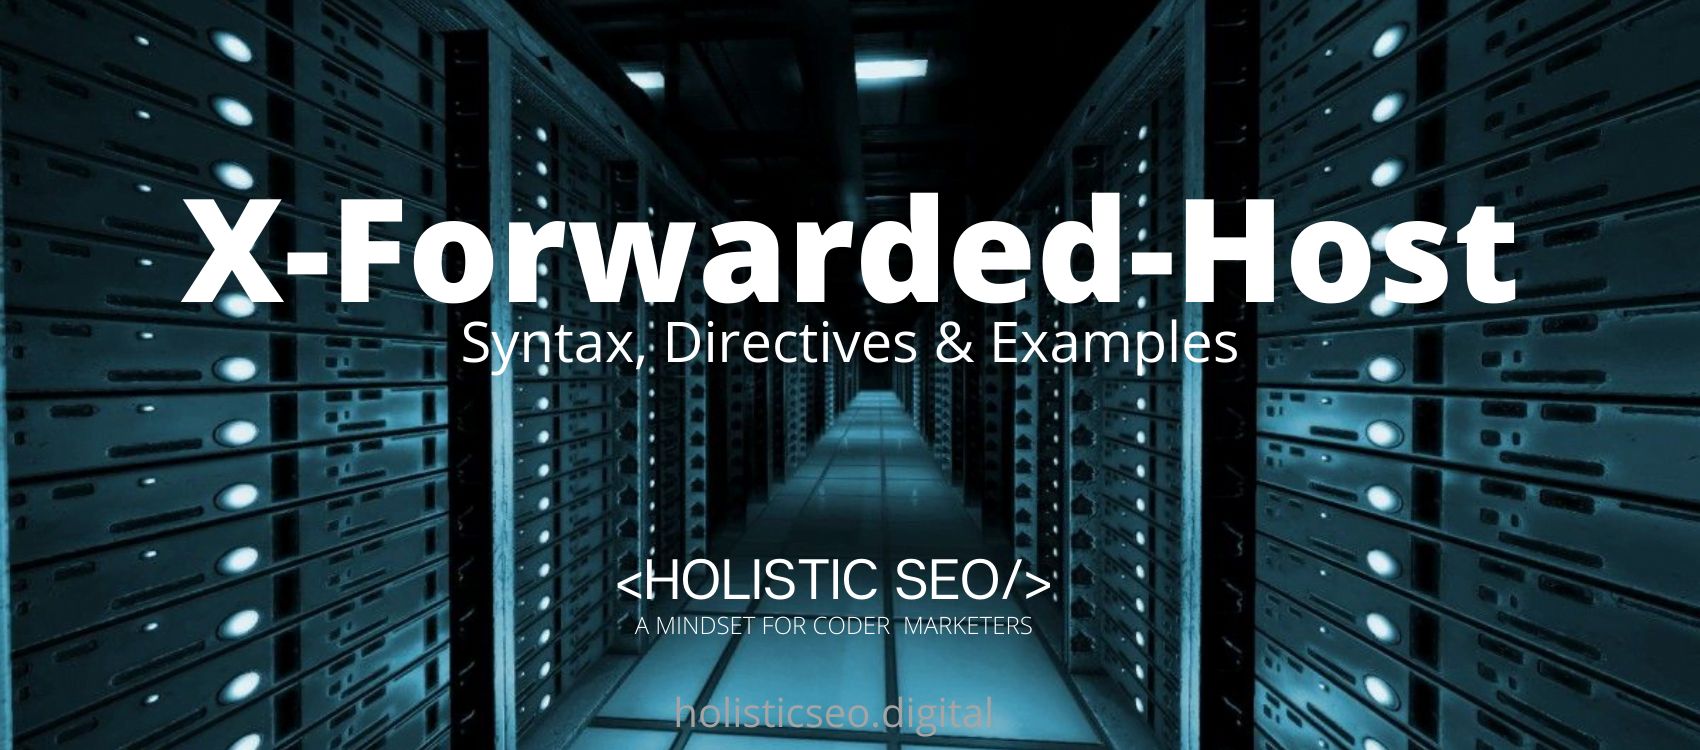 X-Forwarded-Host HTTP Header